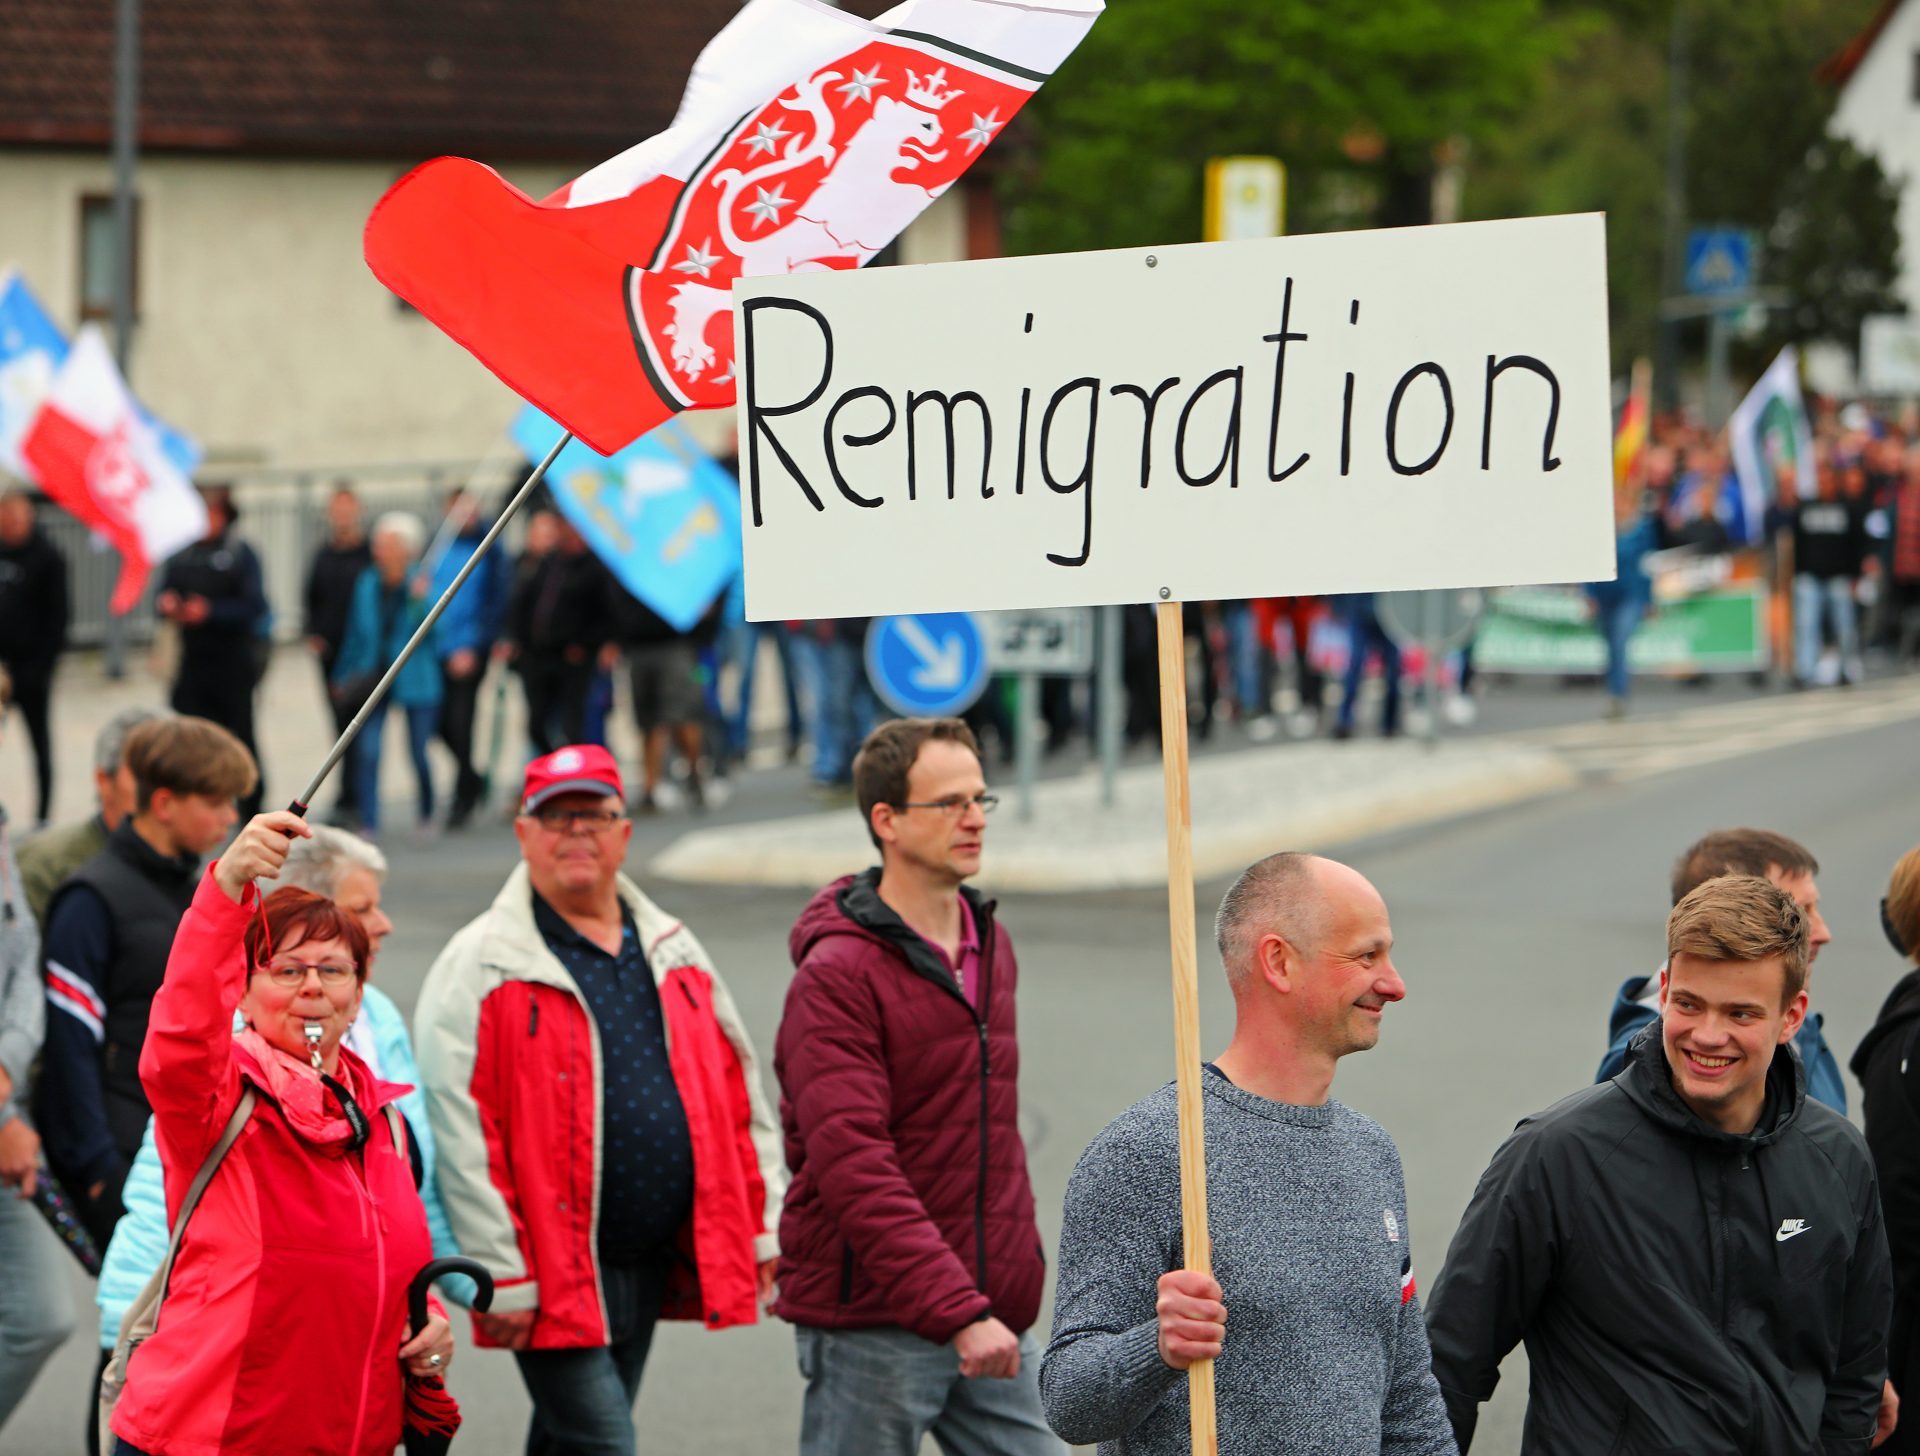 Bilder einer Demonstration. Auf einem hochgehaltenen Schild steht "Remigration"